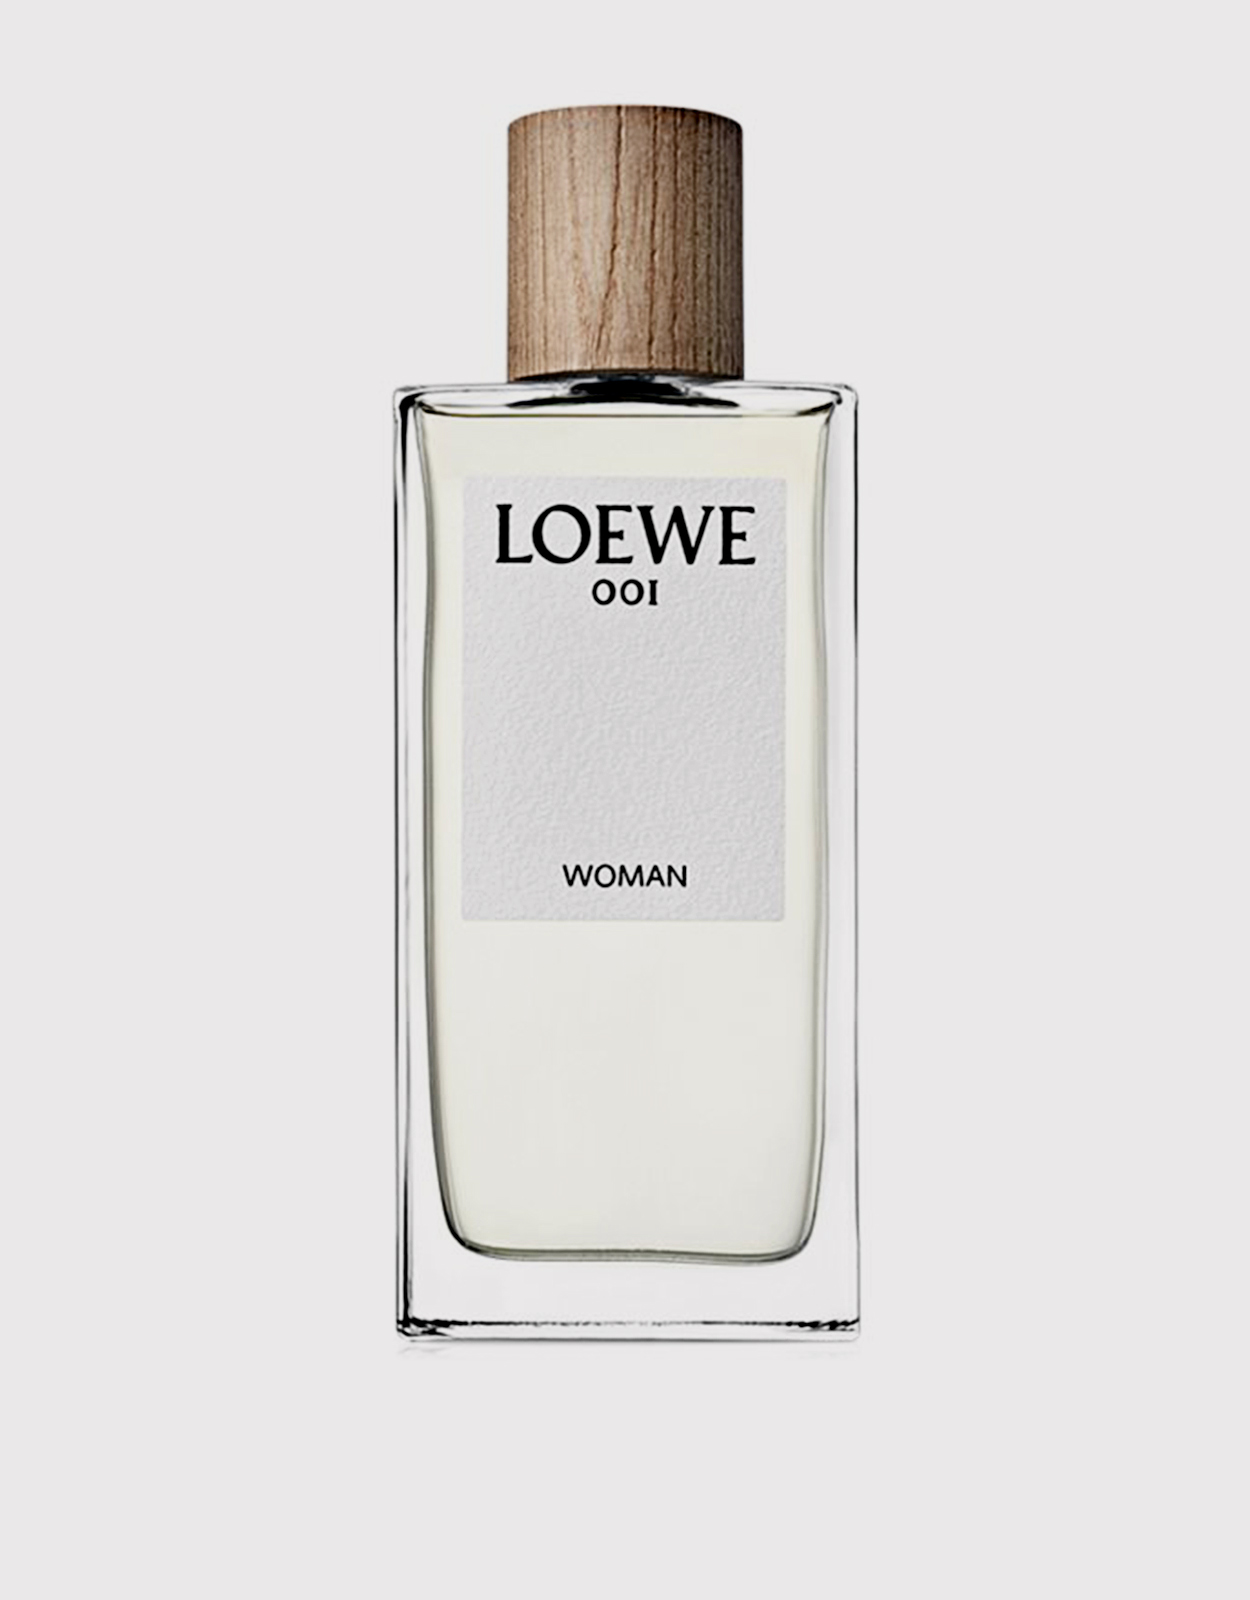 Парфюм лоеве. Loewe духи 001. Парфюмерная вода Loewe 001 woman. Loewe Парфюм EDP 001. Loewe духи тестер 50 мл.